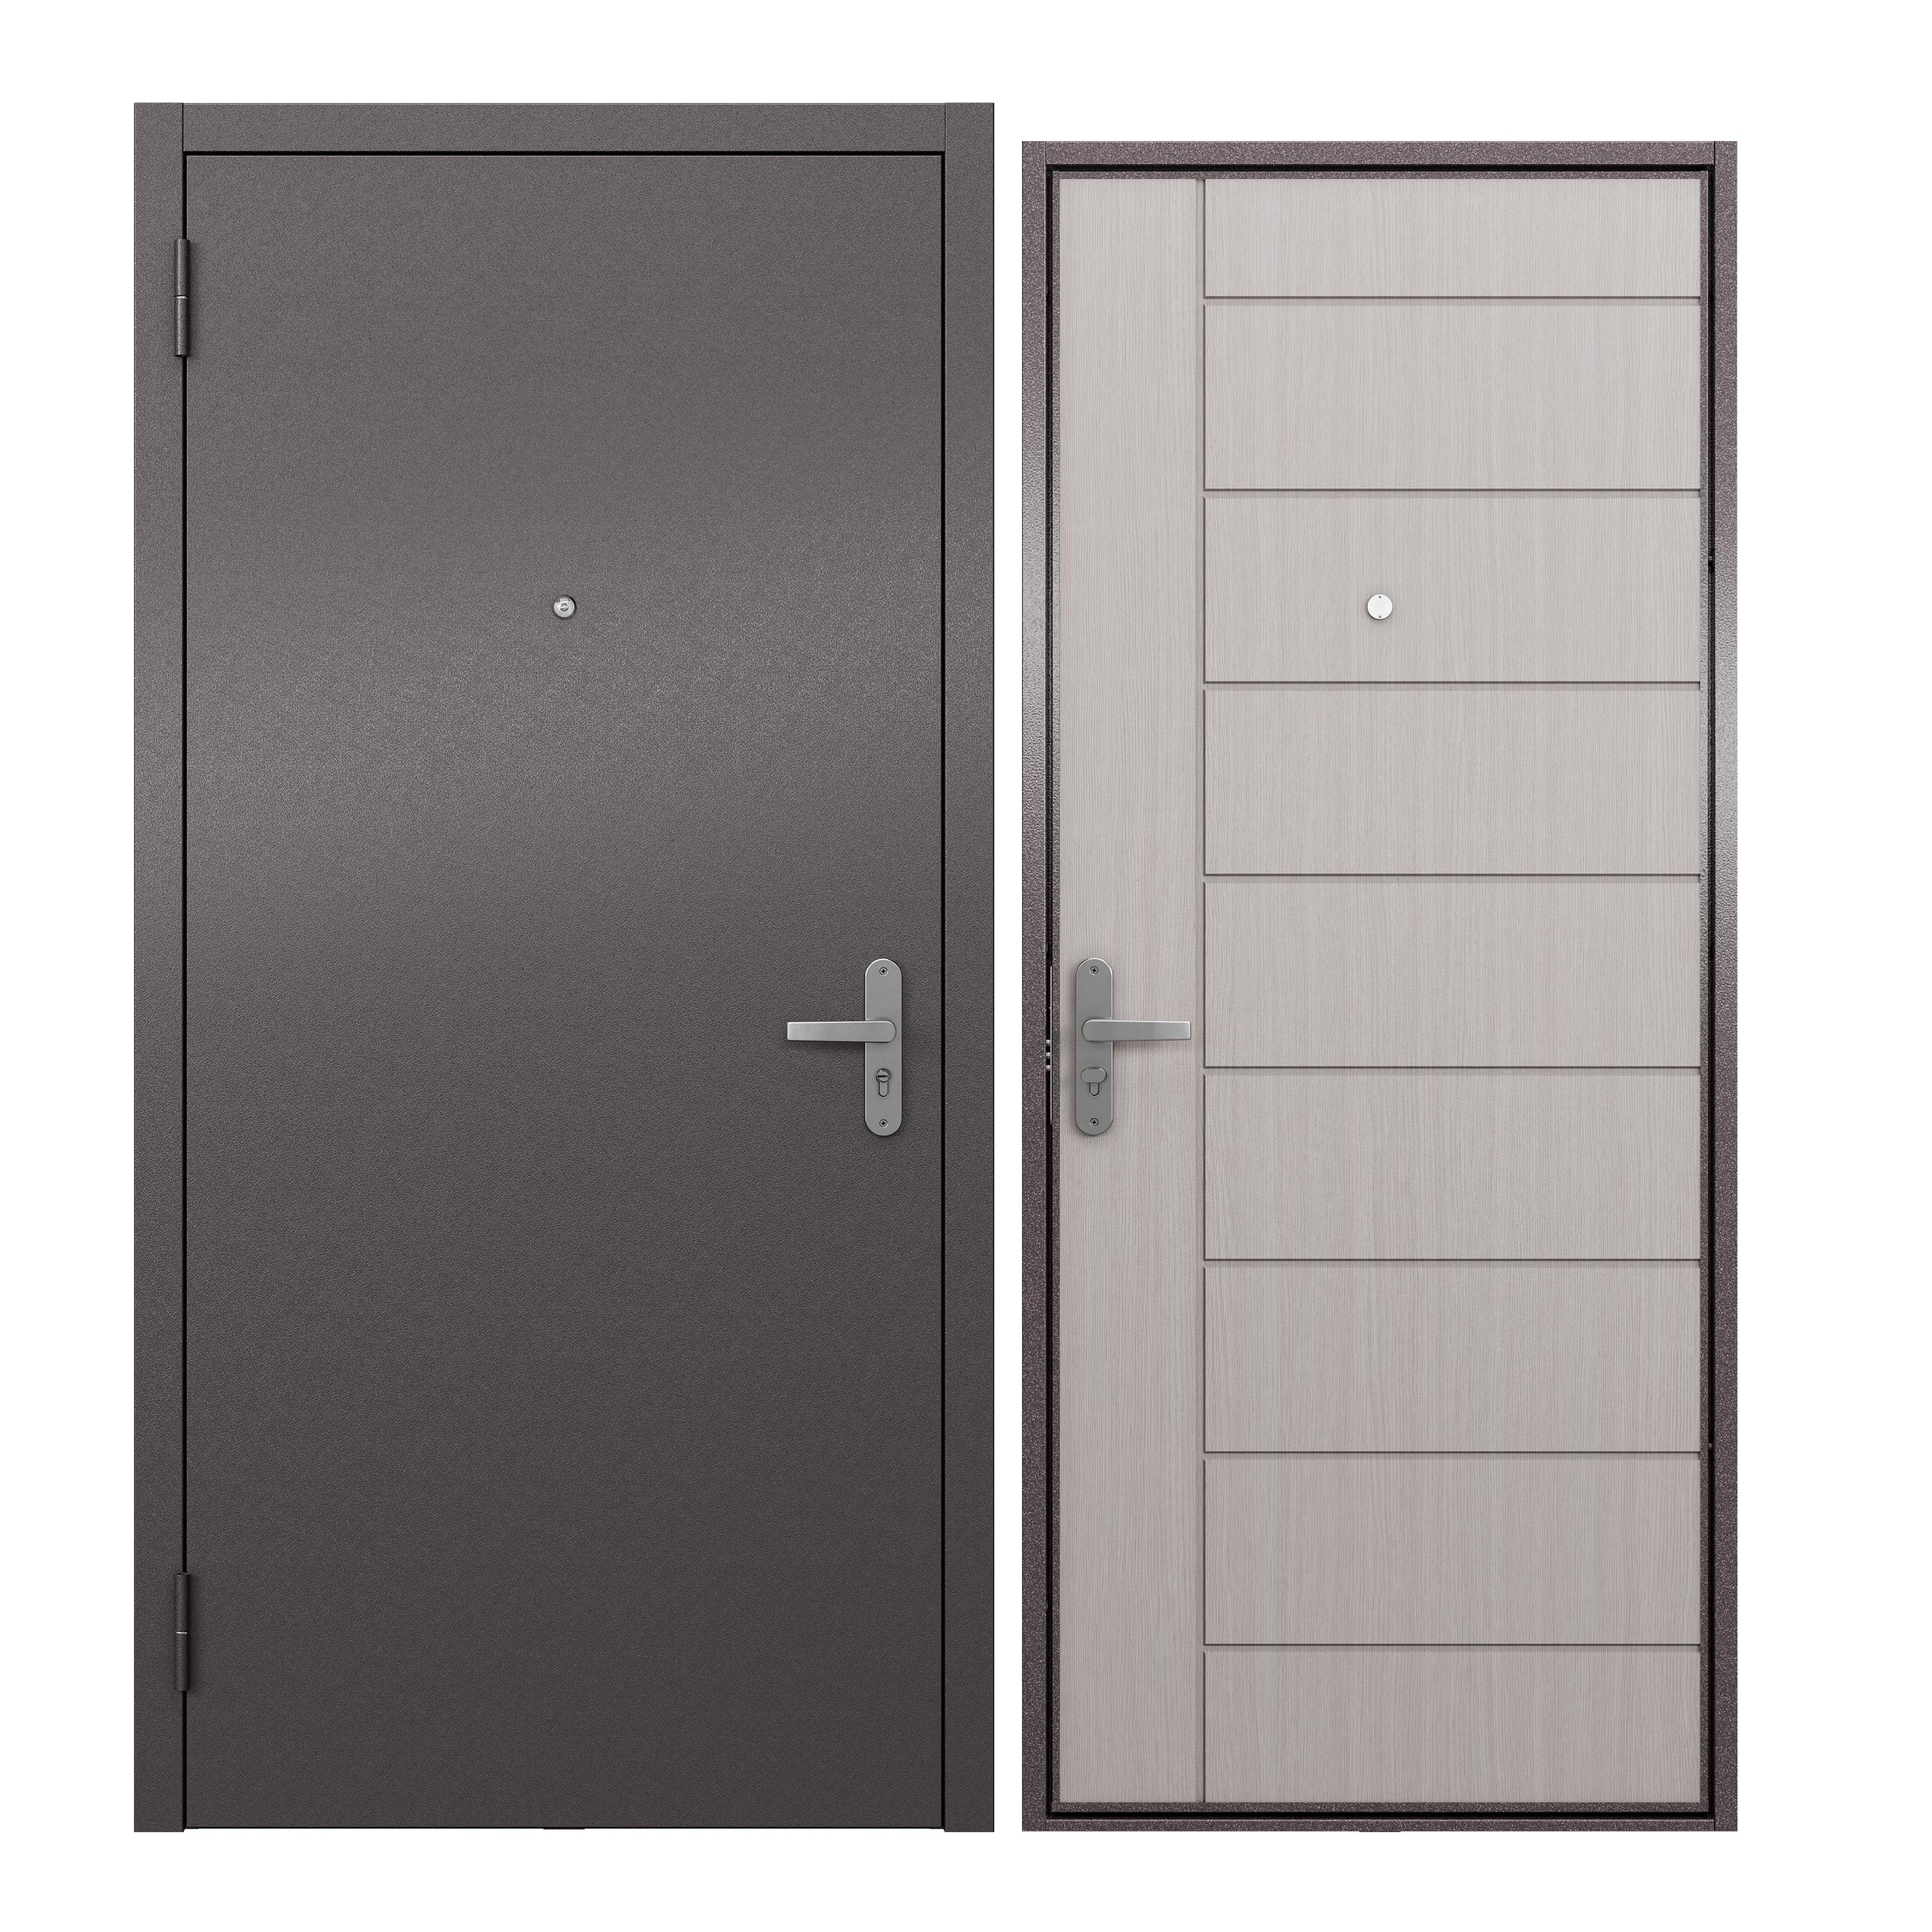 Дверь входная для квартиры ProLine металлическая Terminal A 860х2050, левая, белый дверь входная buldoors марко левая букле шоколад дуб шале натуральный со стеклом 960х2050 мм